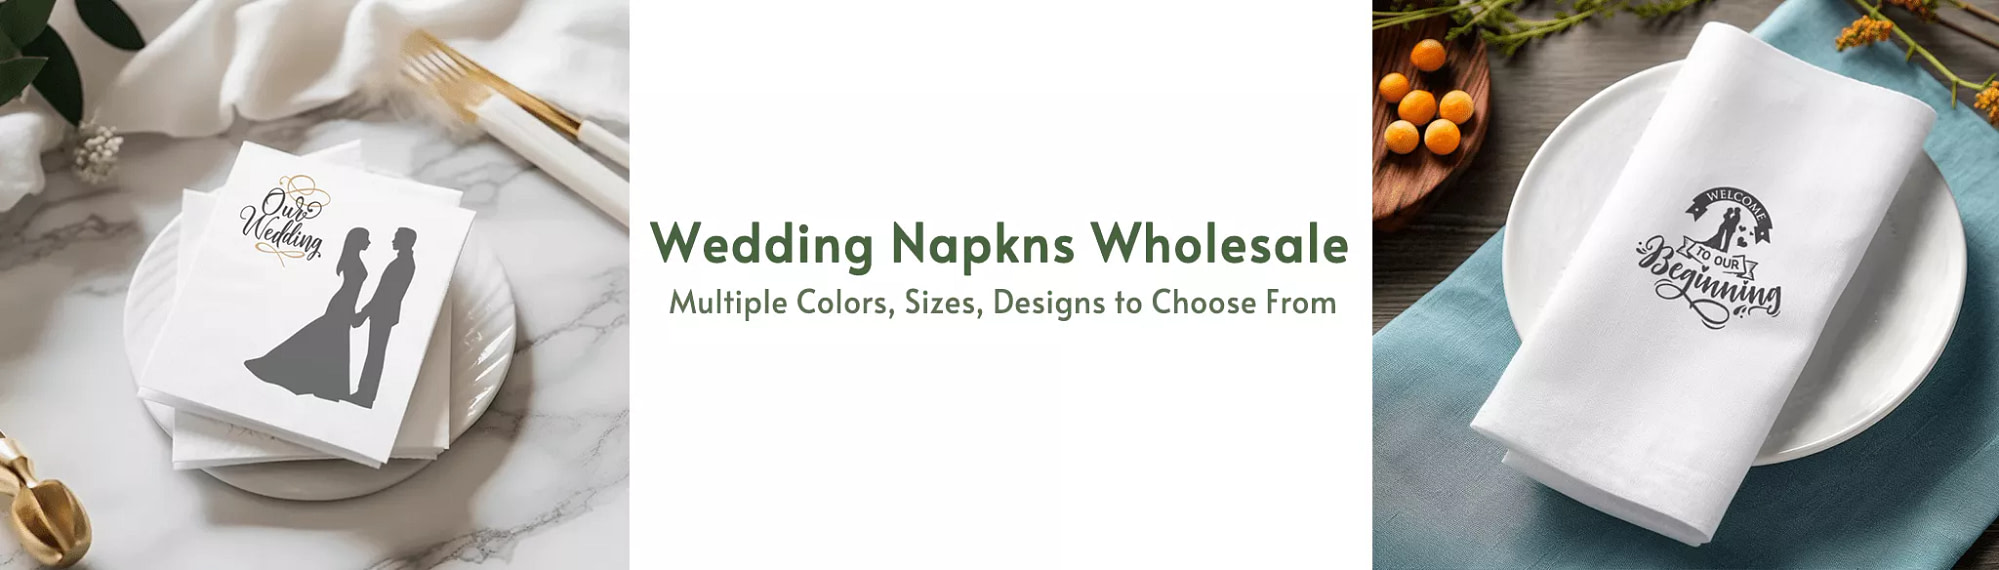 wedding napkins wholesale